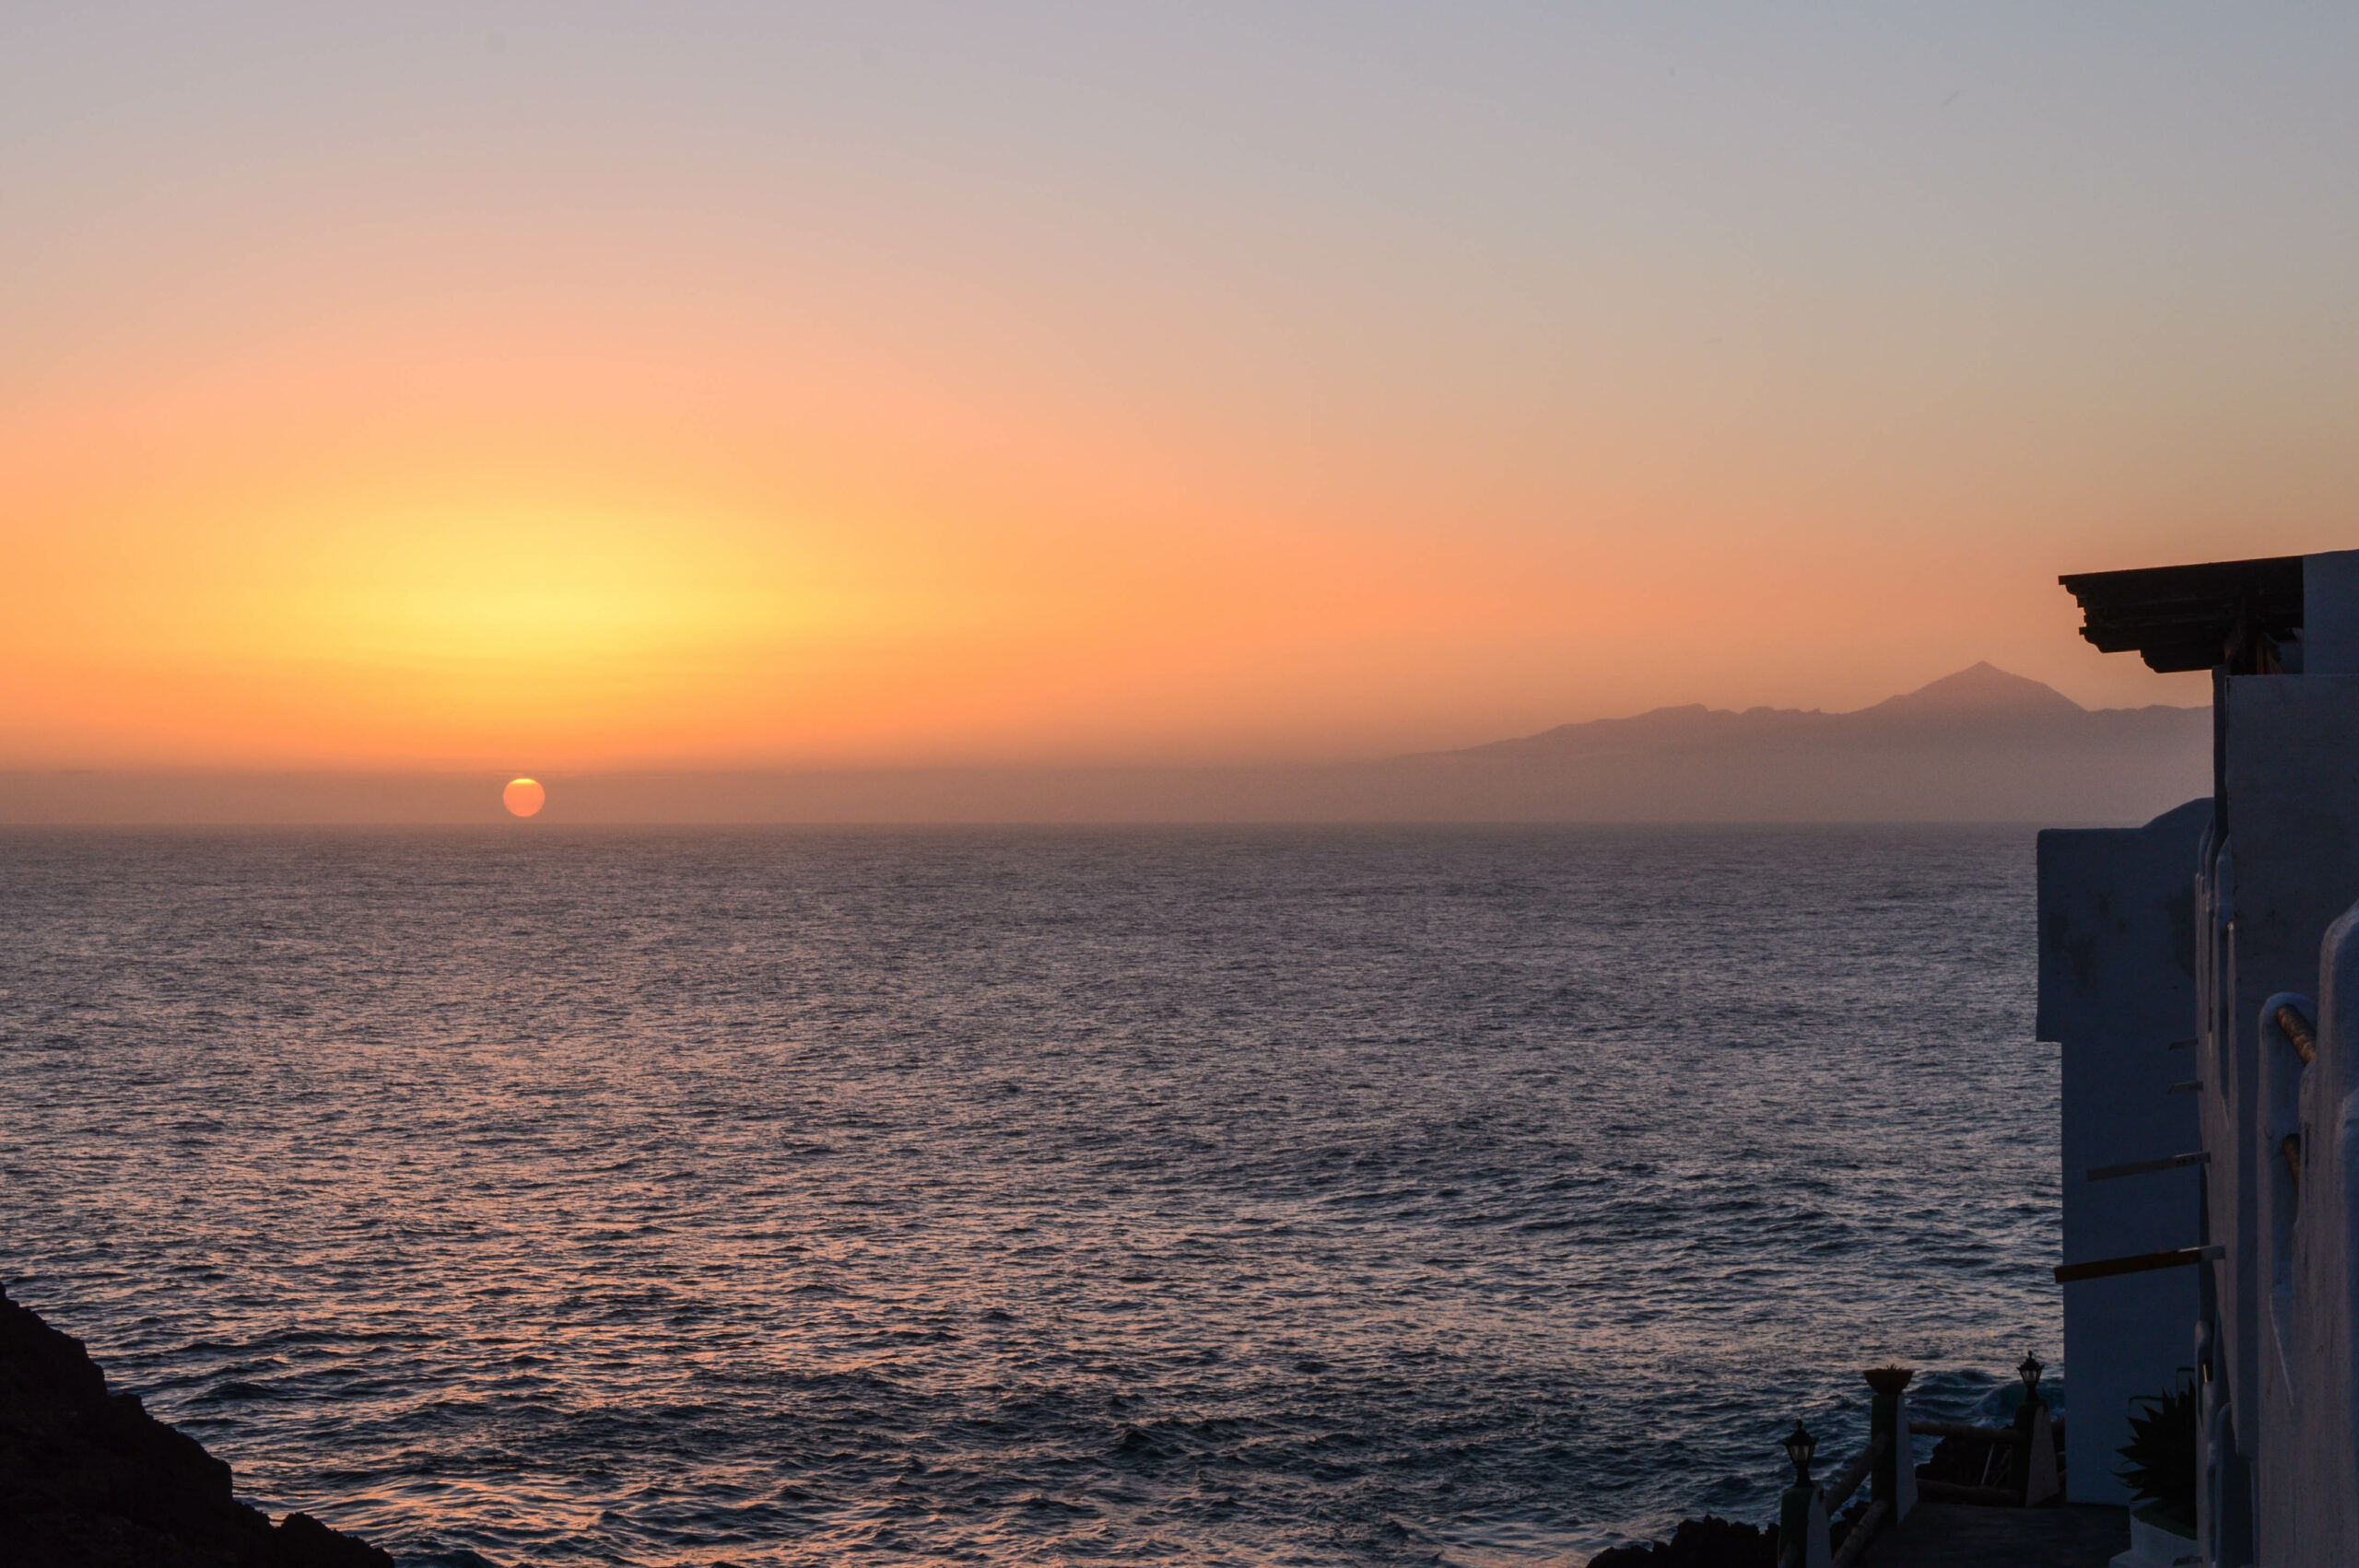 Couleurs oranges du coucher de soleil, avec le volcan Teide de Tenerife en arrière plan